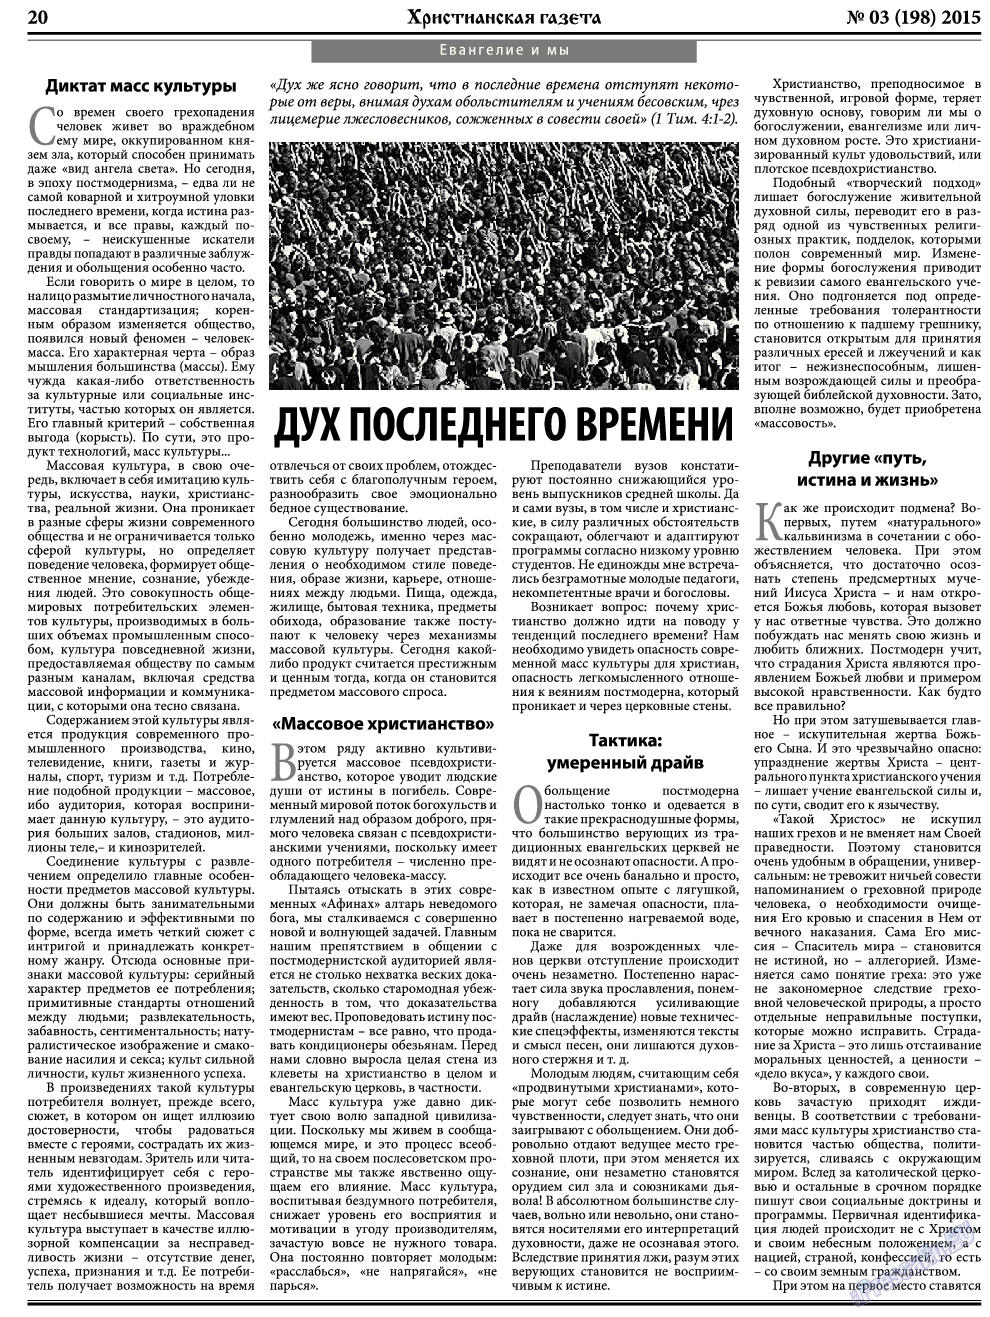 Христианская газета, газета. 2015 №3 стр.28